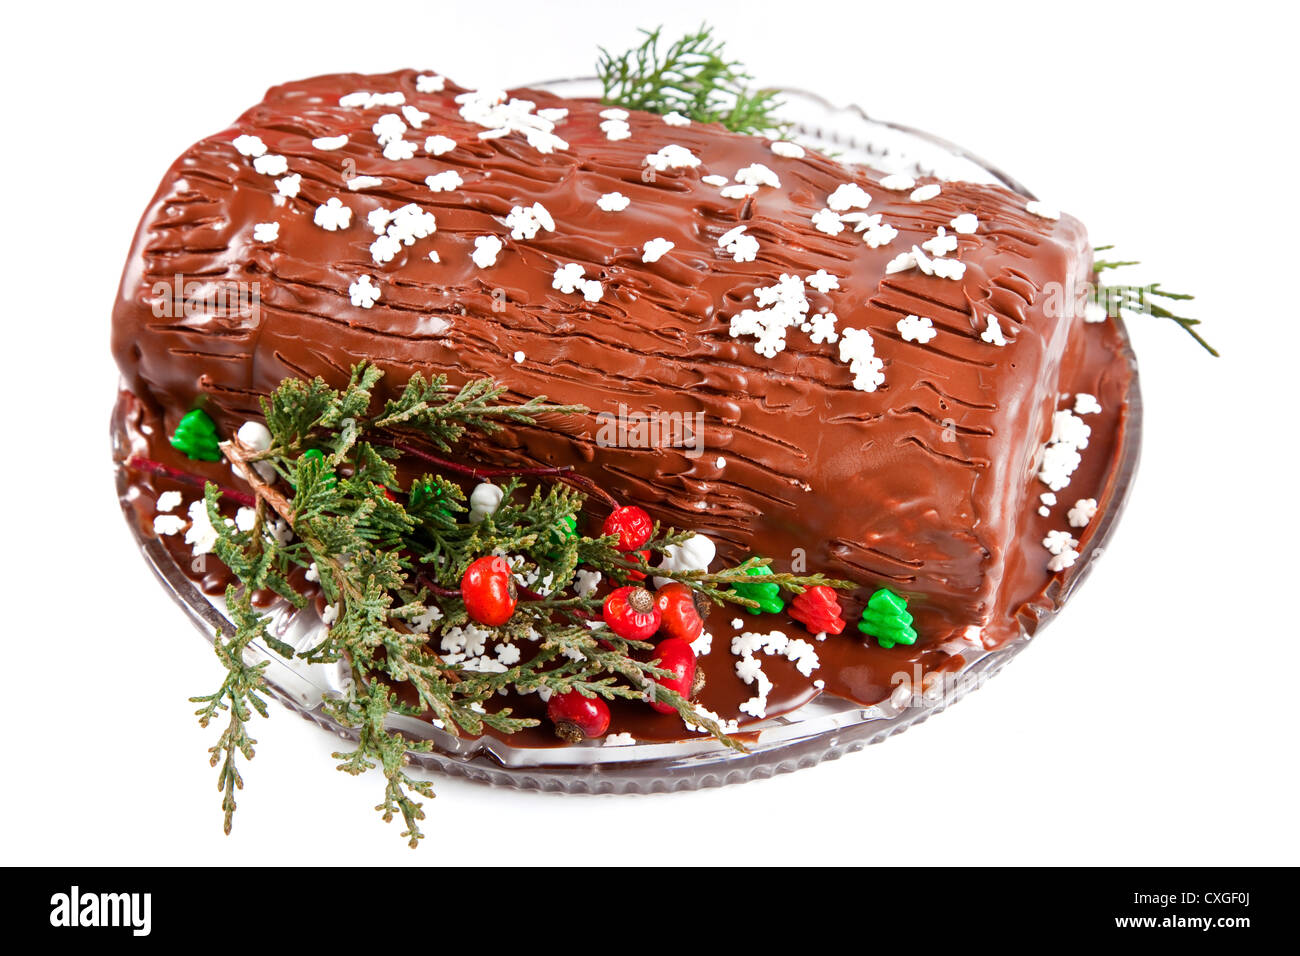 Navidad de chocolate caseras Yule log con flor de pascua y otras decoraciones de temporada. Foto de stock